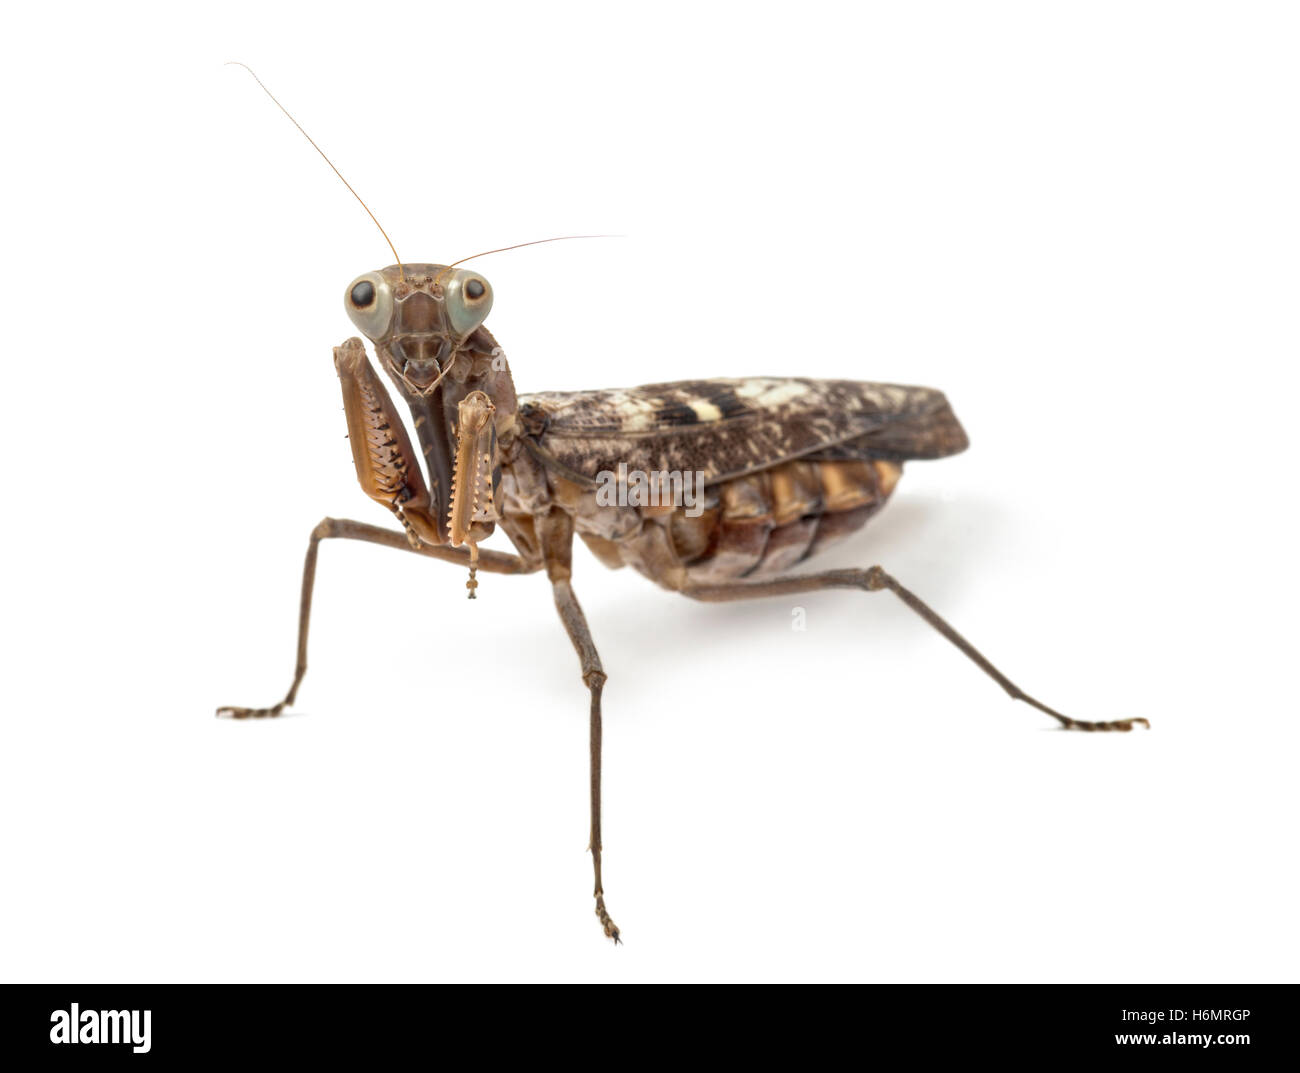 Old and blind female praying mantis - Rhombodera fusca, isolated on white Stock Photo